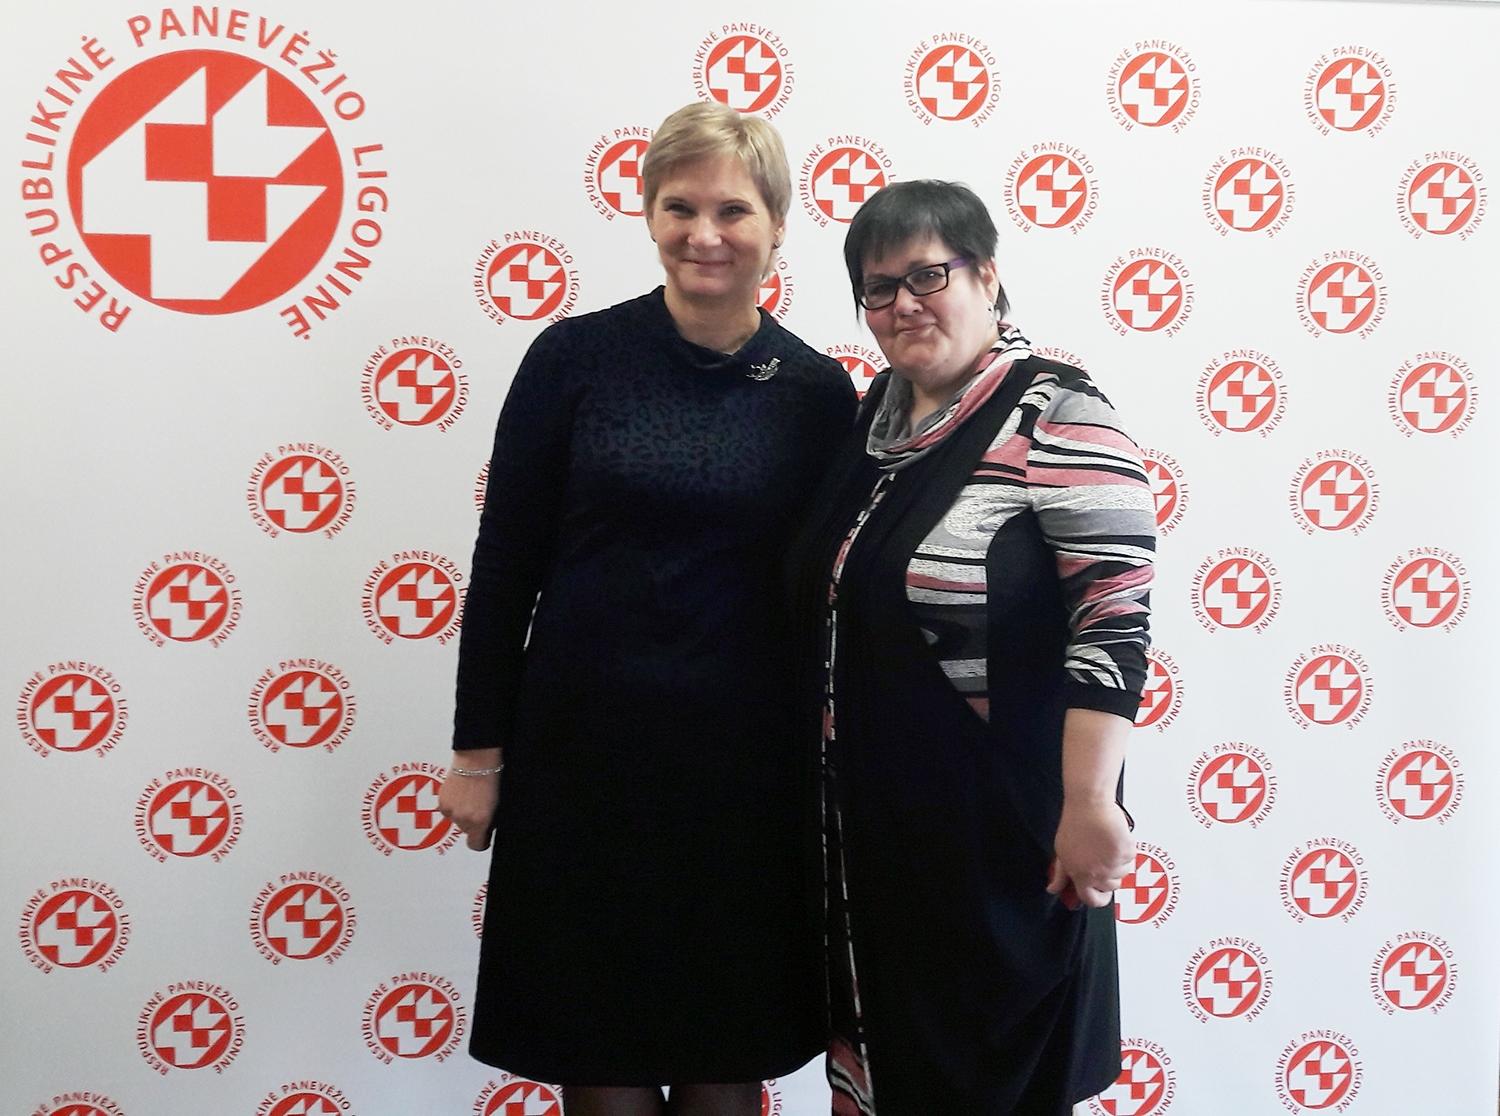 Apdovanotos ir ukmergiškės slaugytojos / Sveikatos apsaugos ministro apdovanotos Ukmergės PSPC slaugytojos A. Diakienė (dešinėje) ir A. Kalesnikienė.